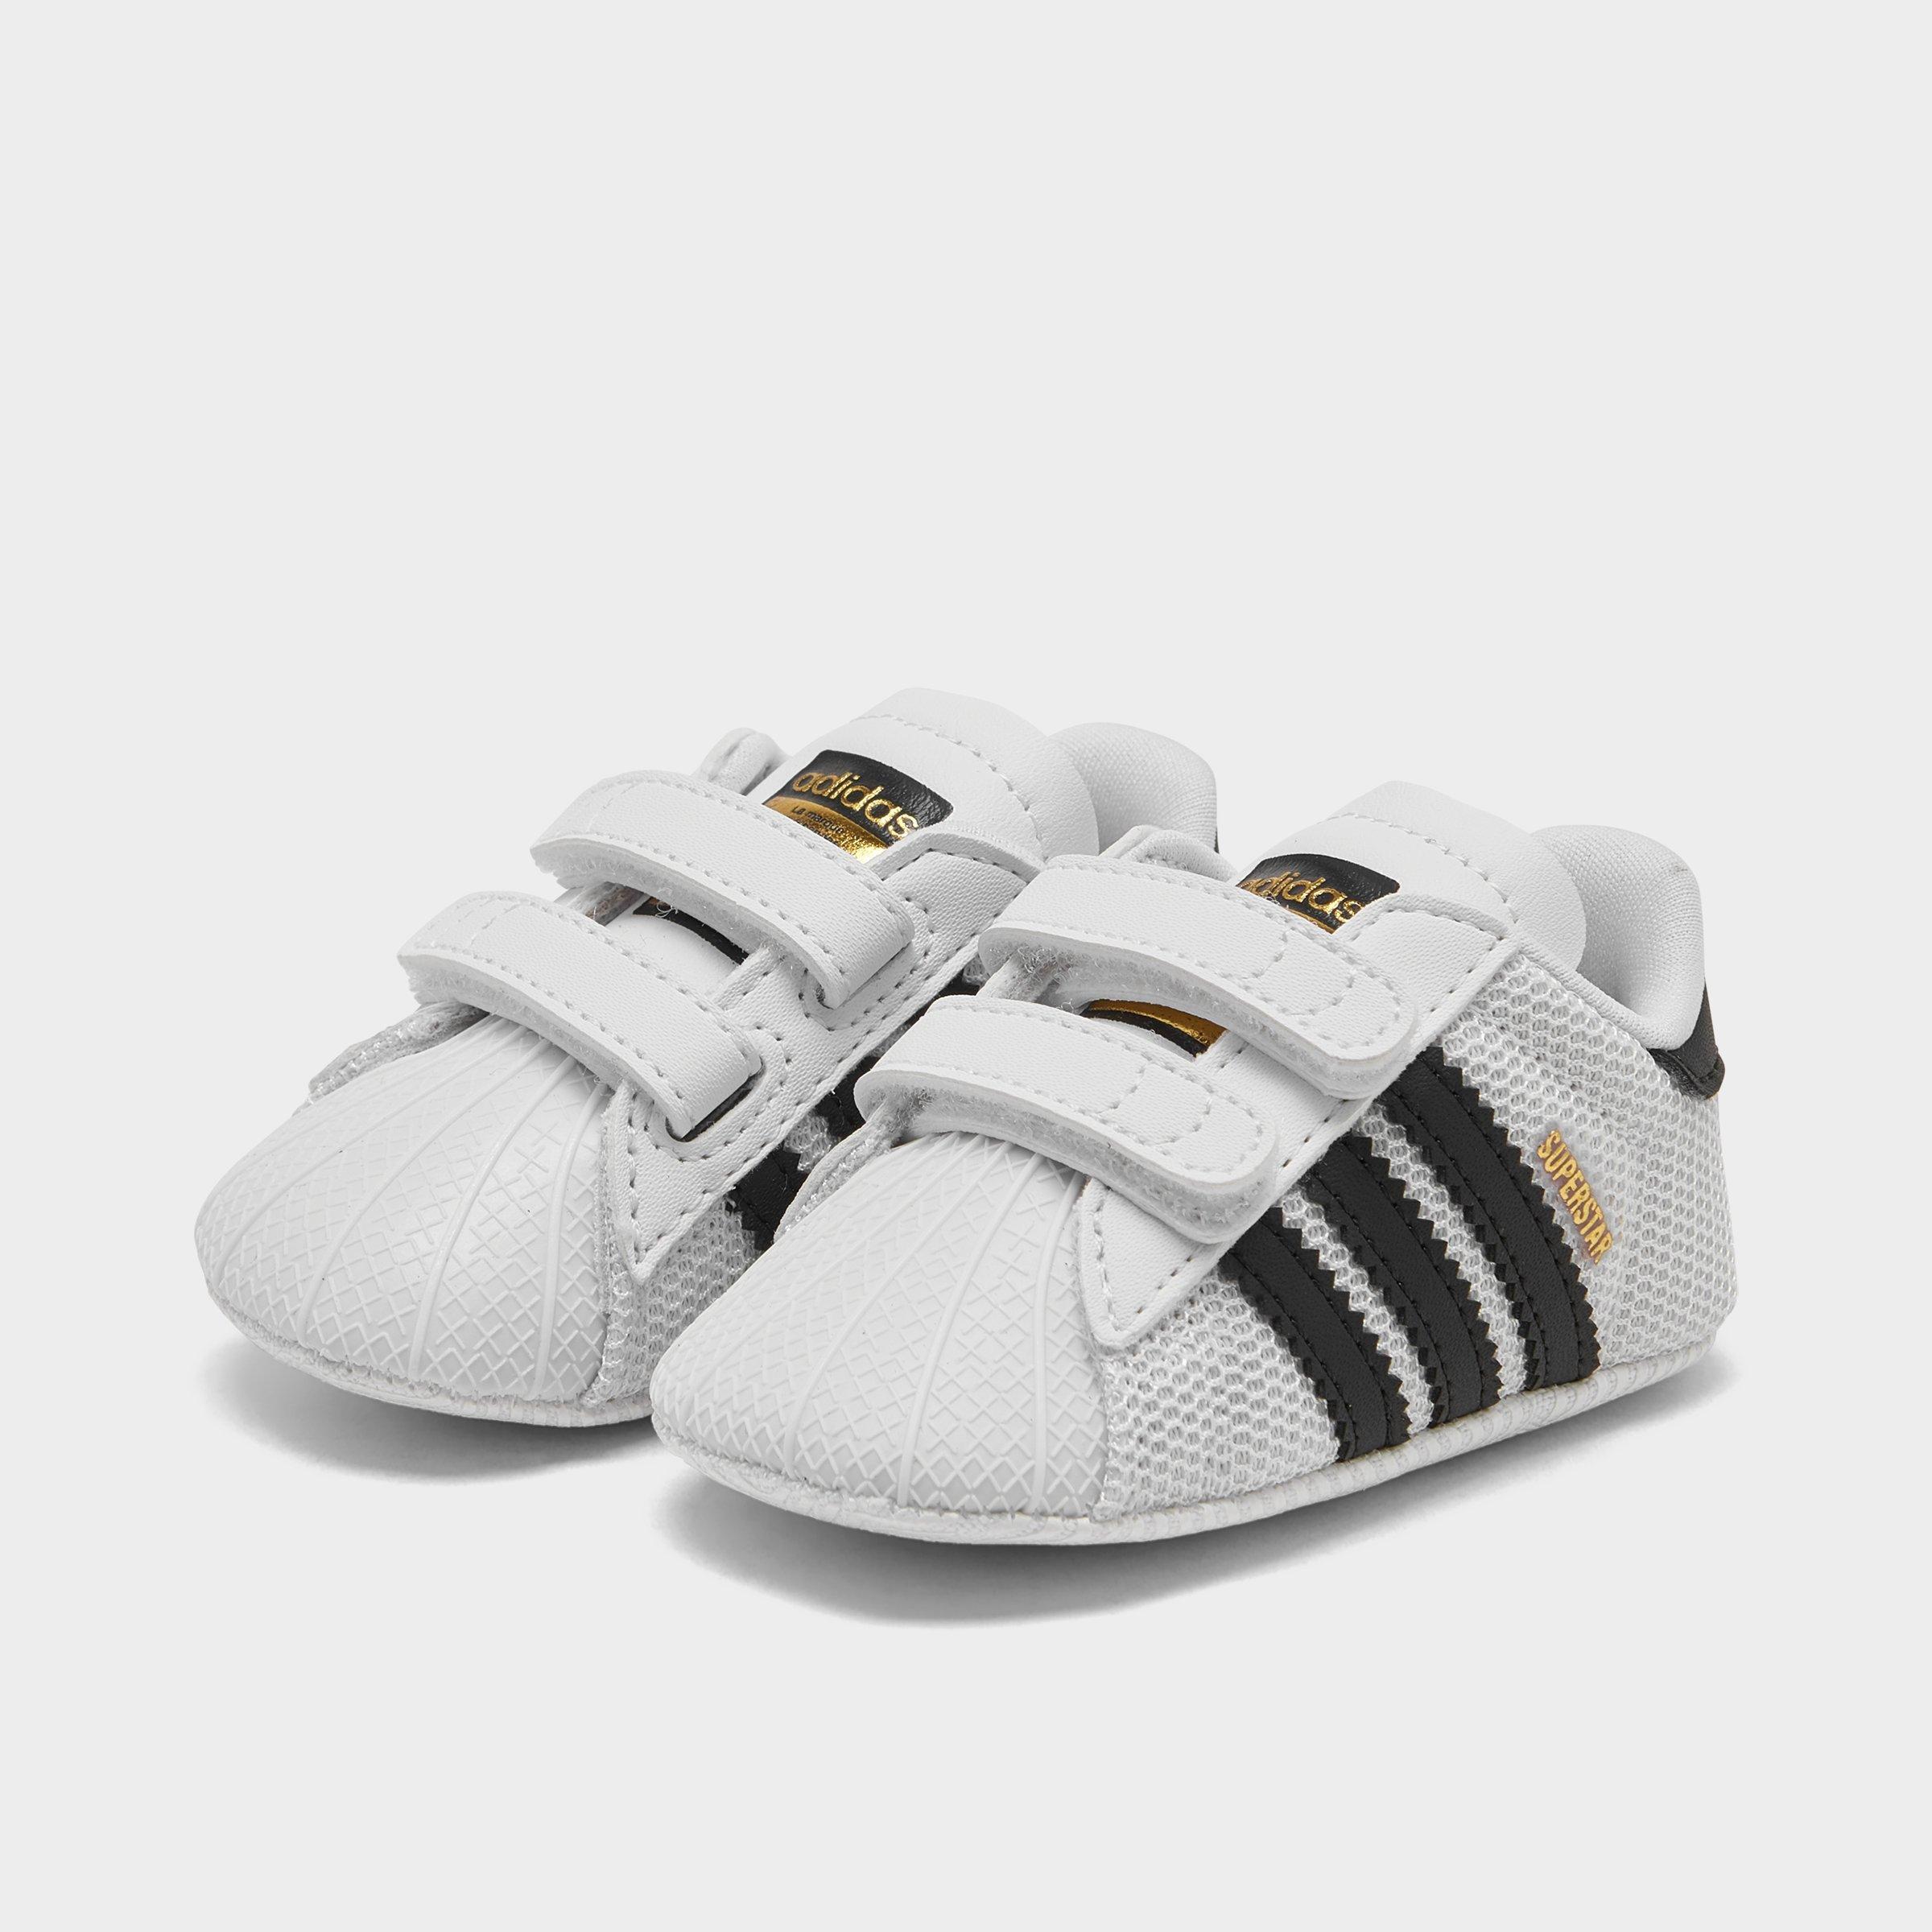 adidas infant crib shoes